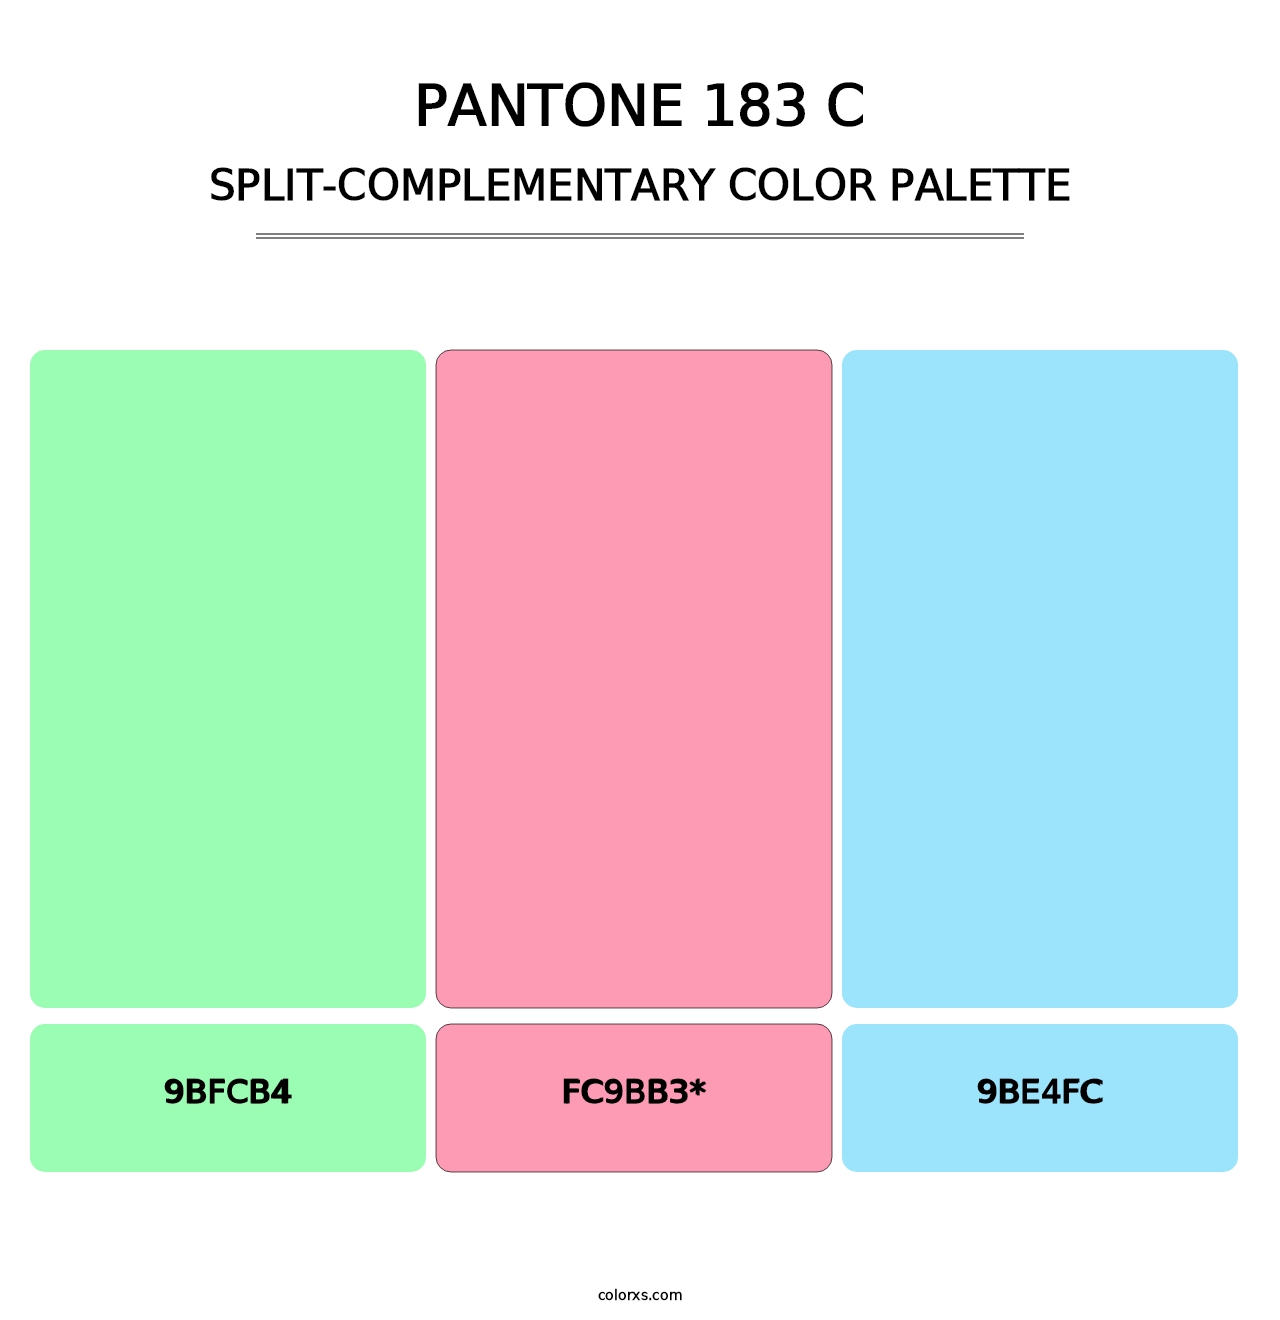 PANTONE 183 C - Split-Complementary Color Palette